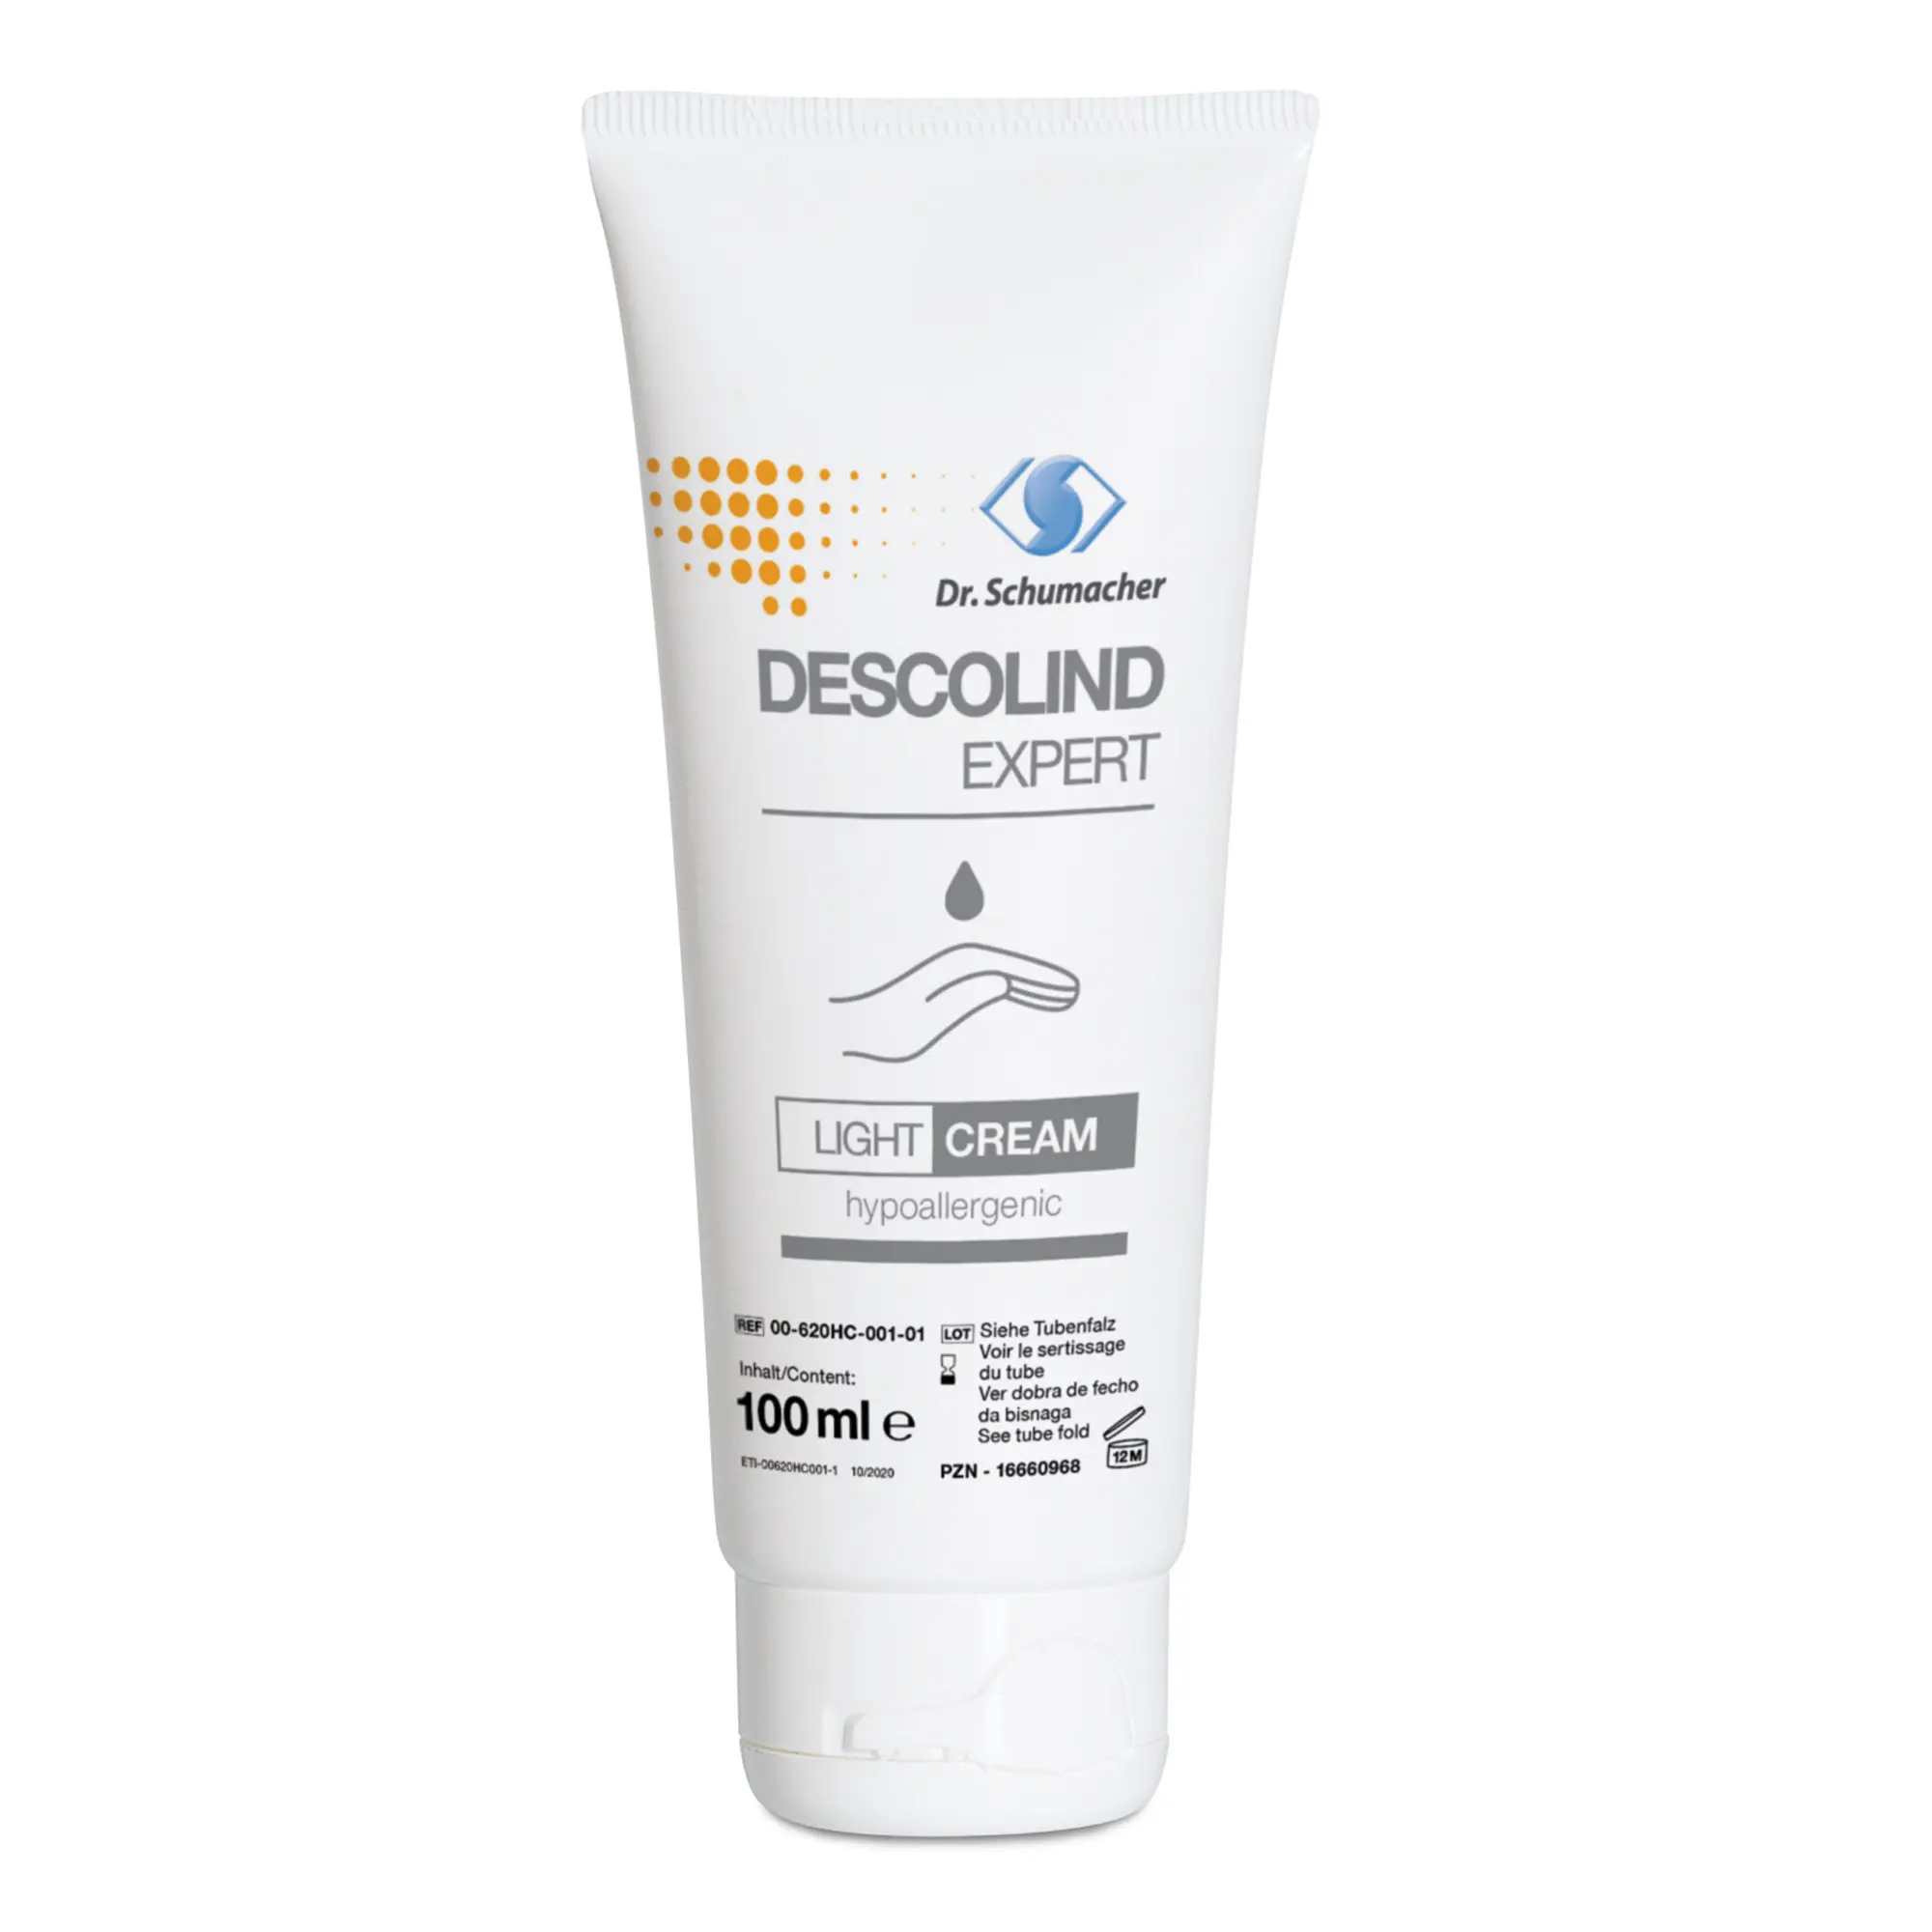 Dr. Schumacher Descolind Expert Light Cream Pflegecreme 100 ml 00-620HC-001-01_1